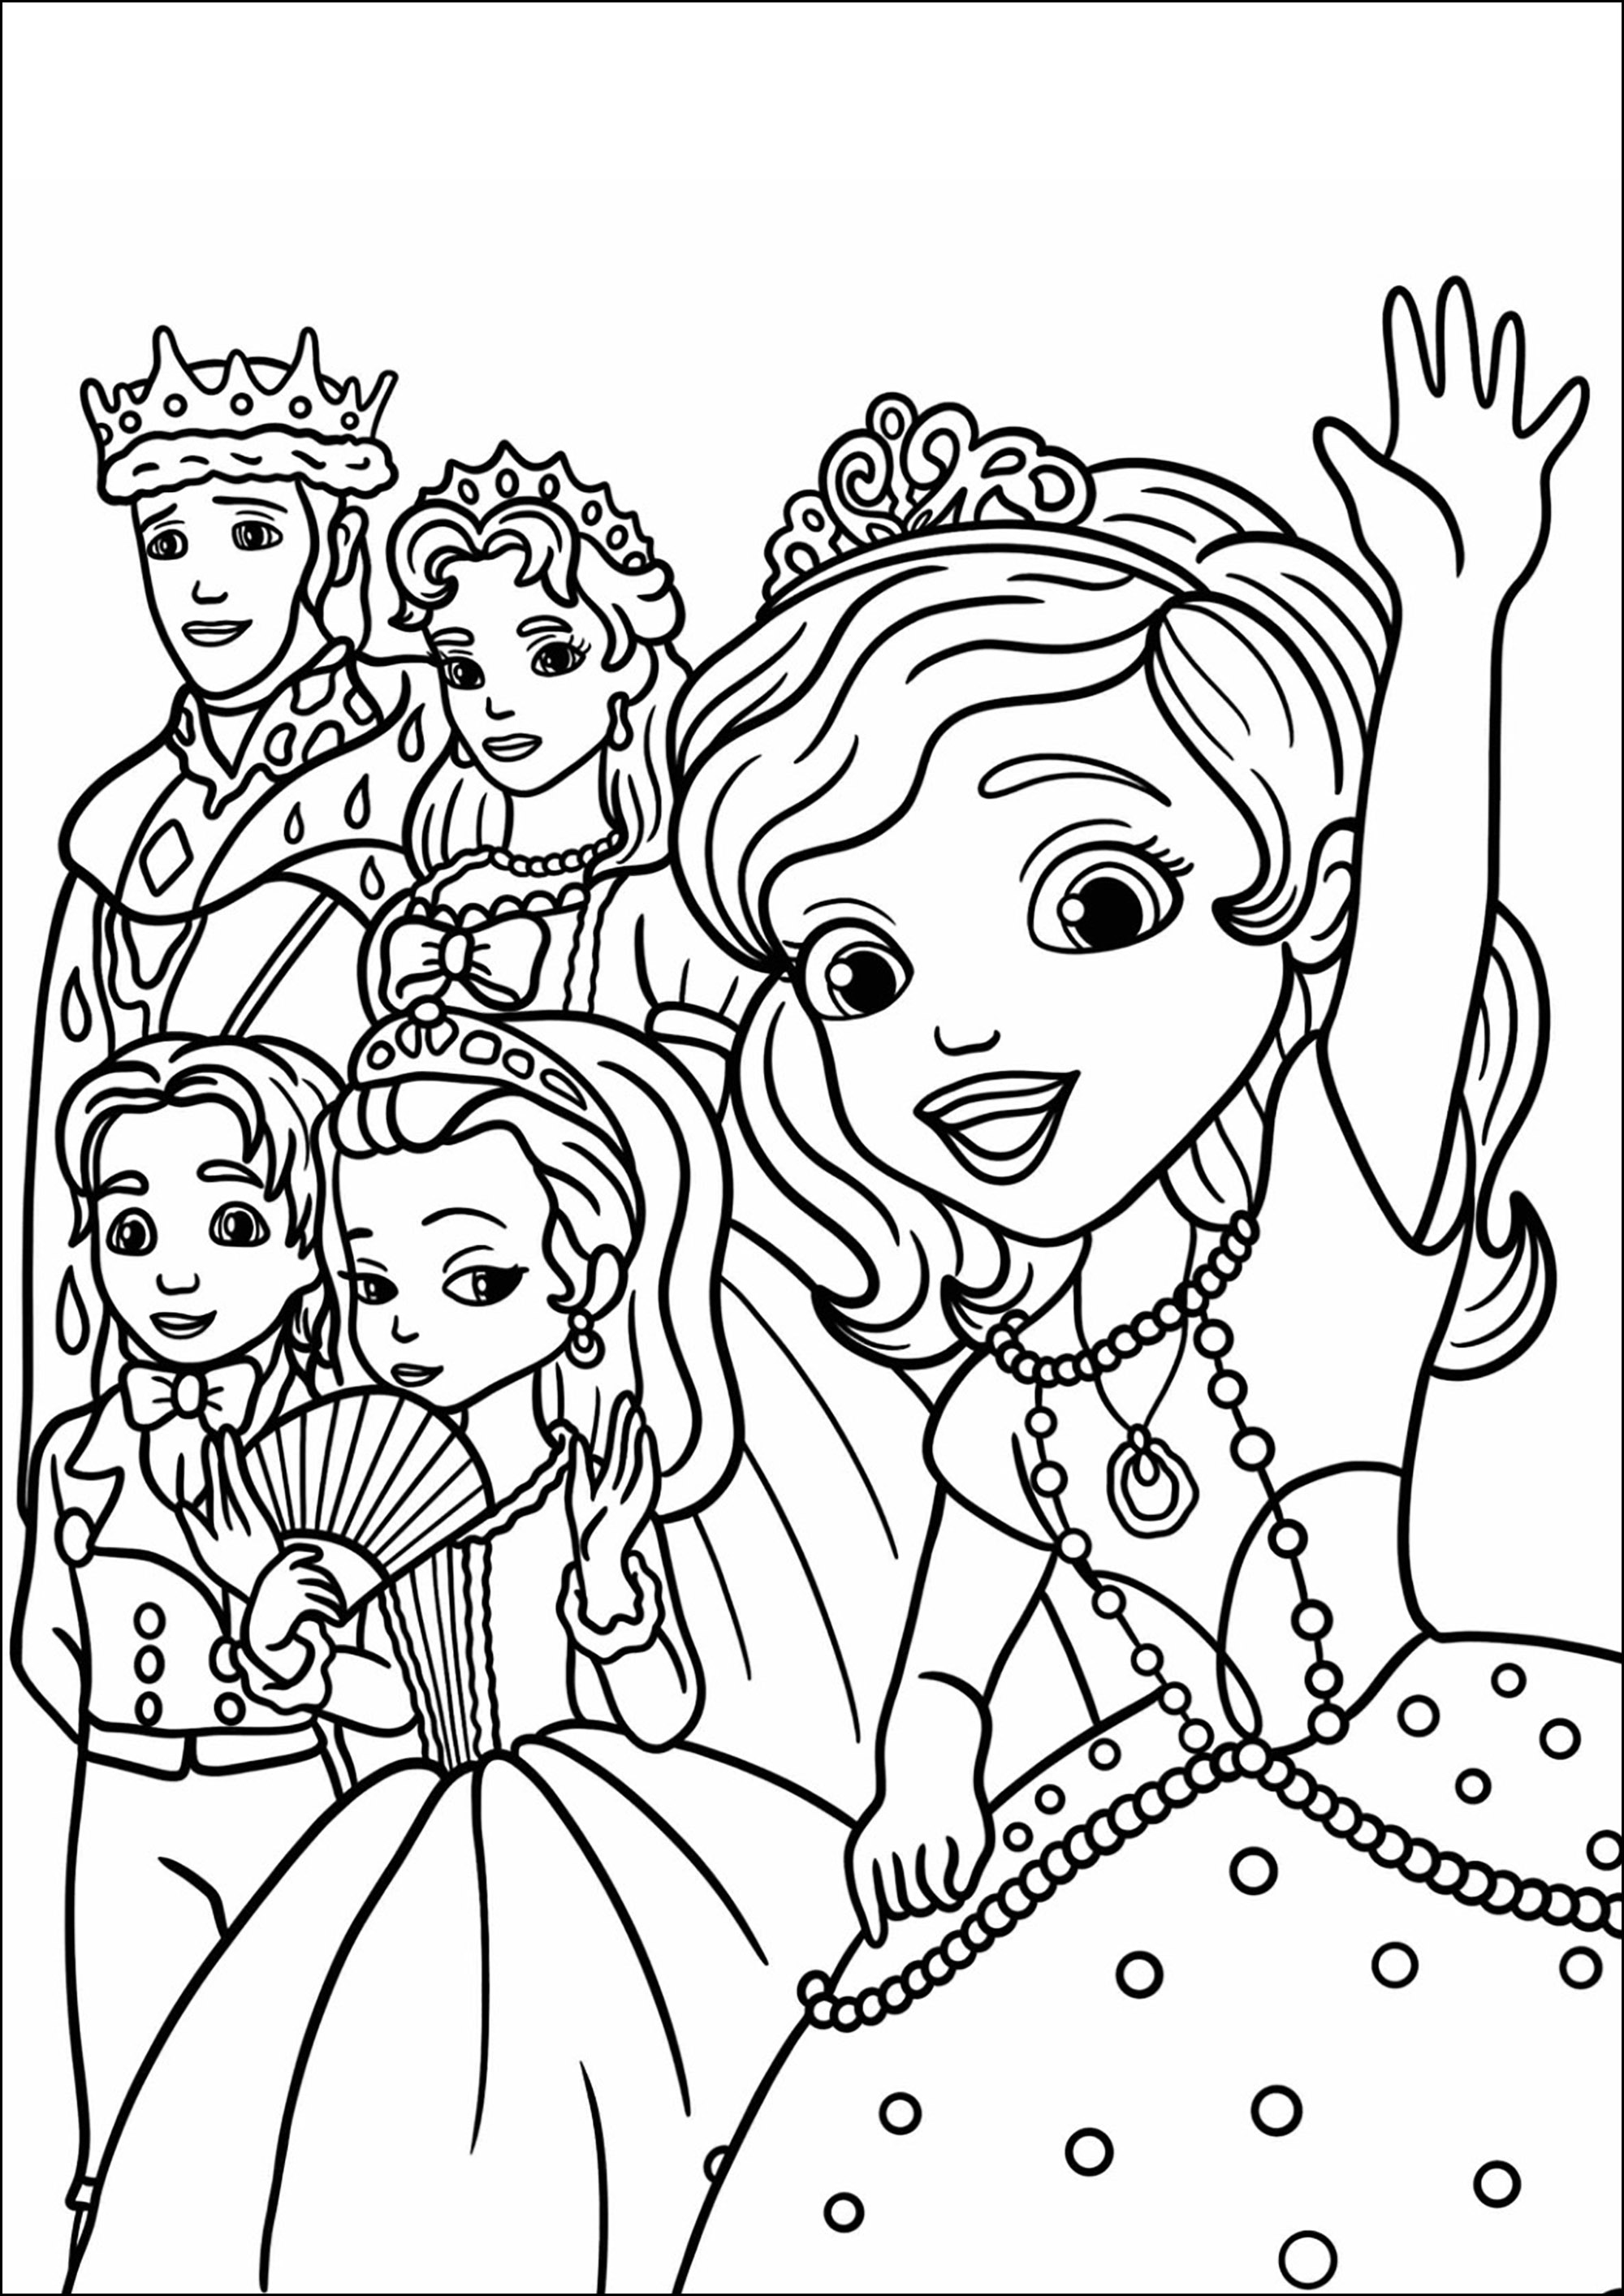 A Princesa Sofia e a sua família real